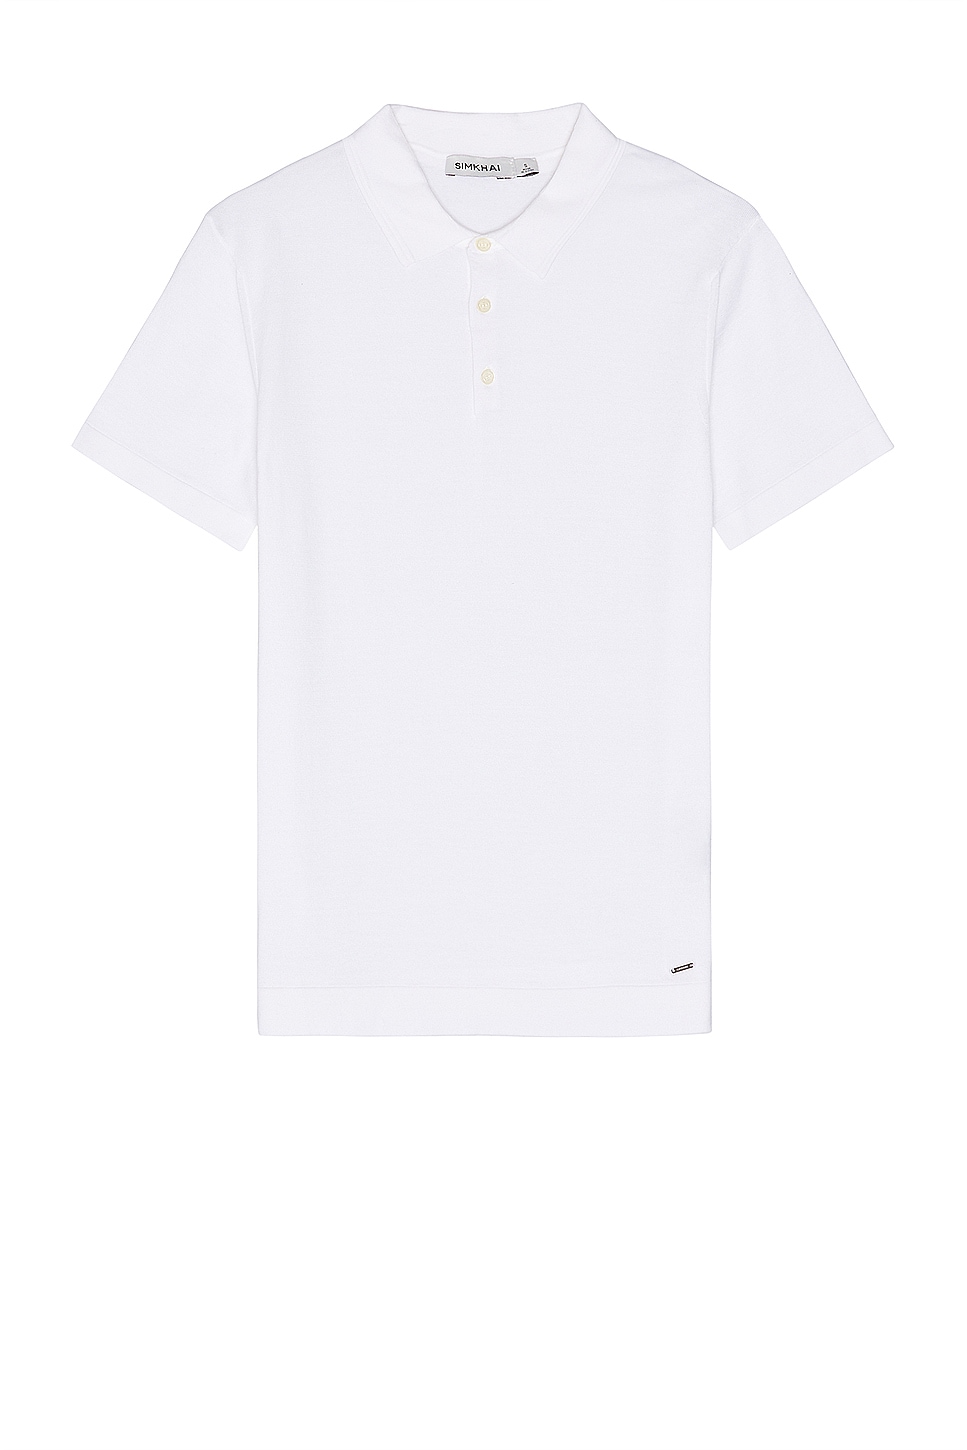 Barron Short Sleeve Polo in White